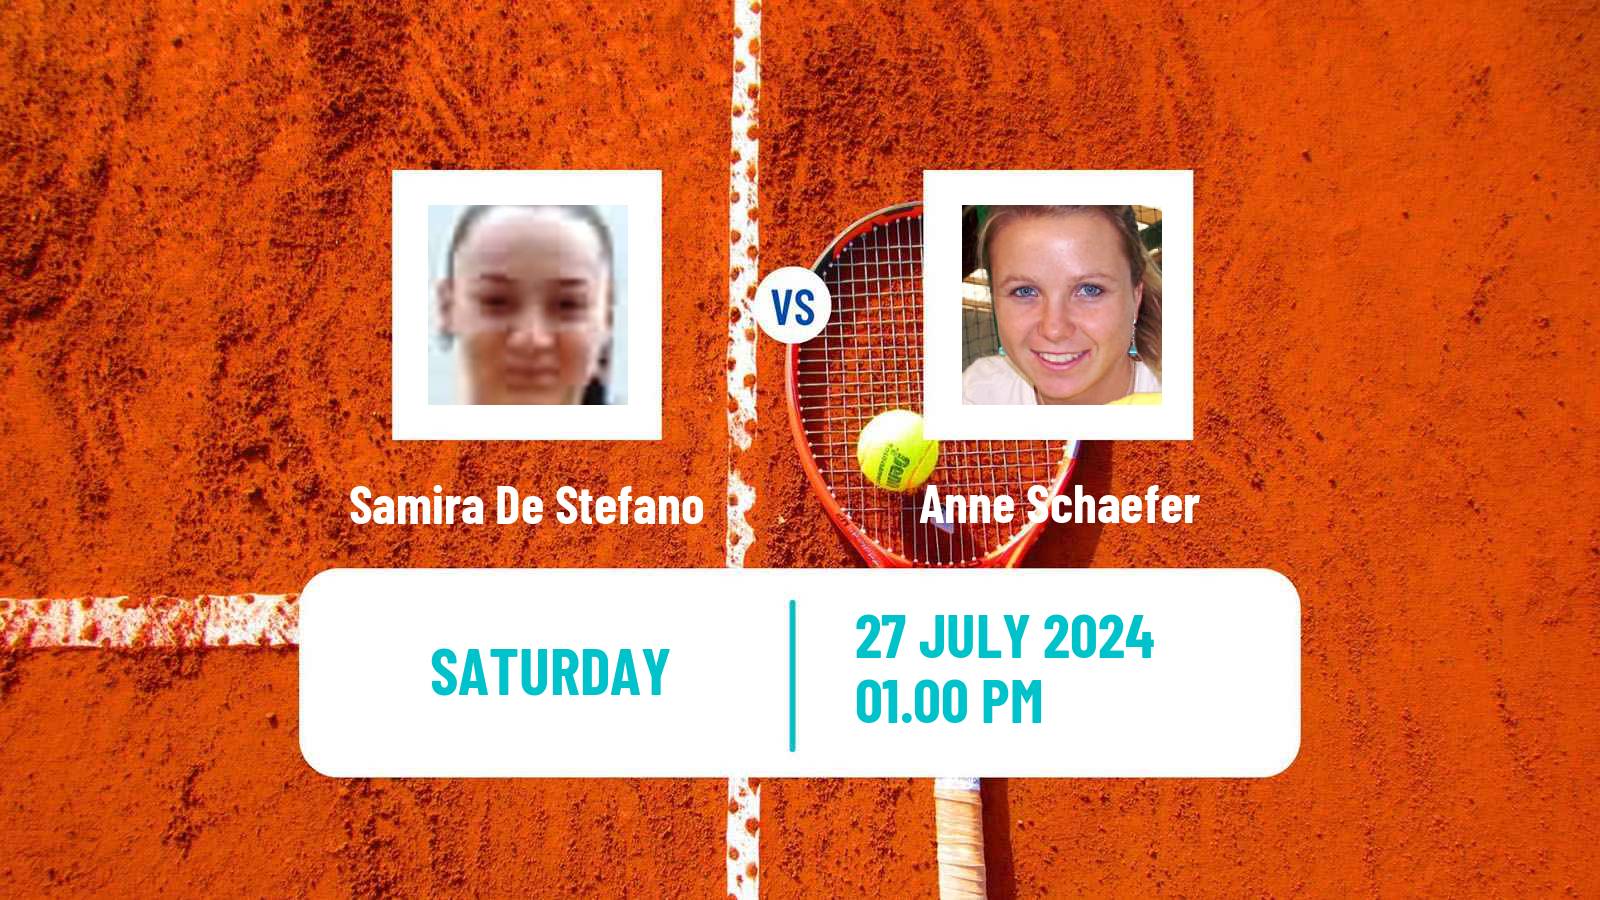 Tennis ITF W15 Viserba Women Samira De Stefano - Anne Schaefer